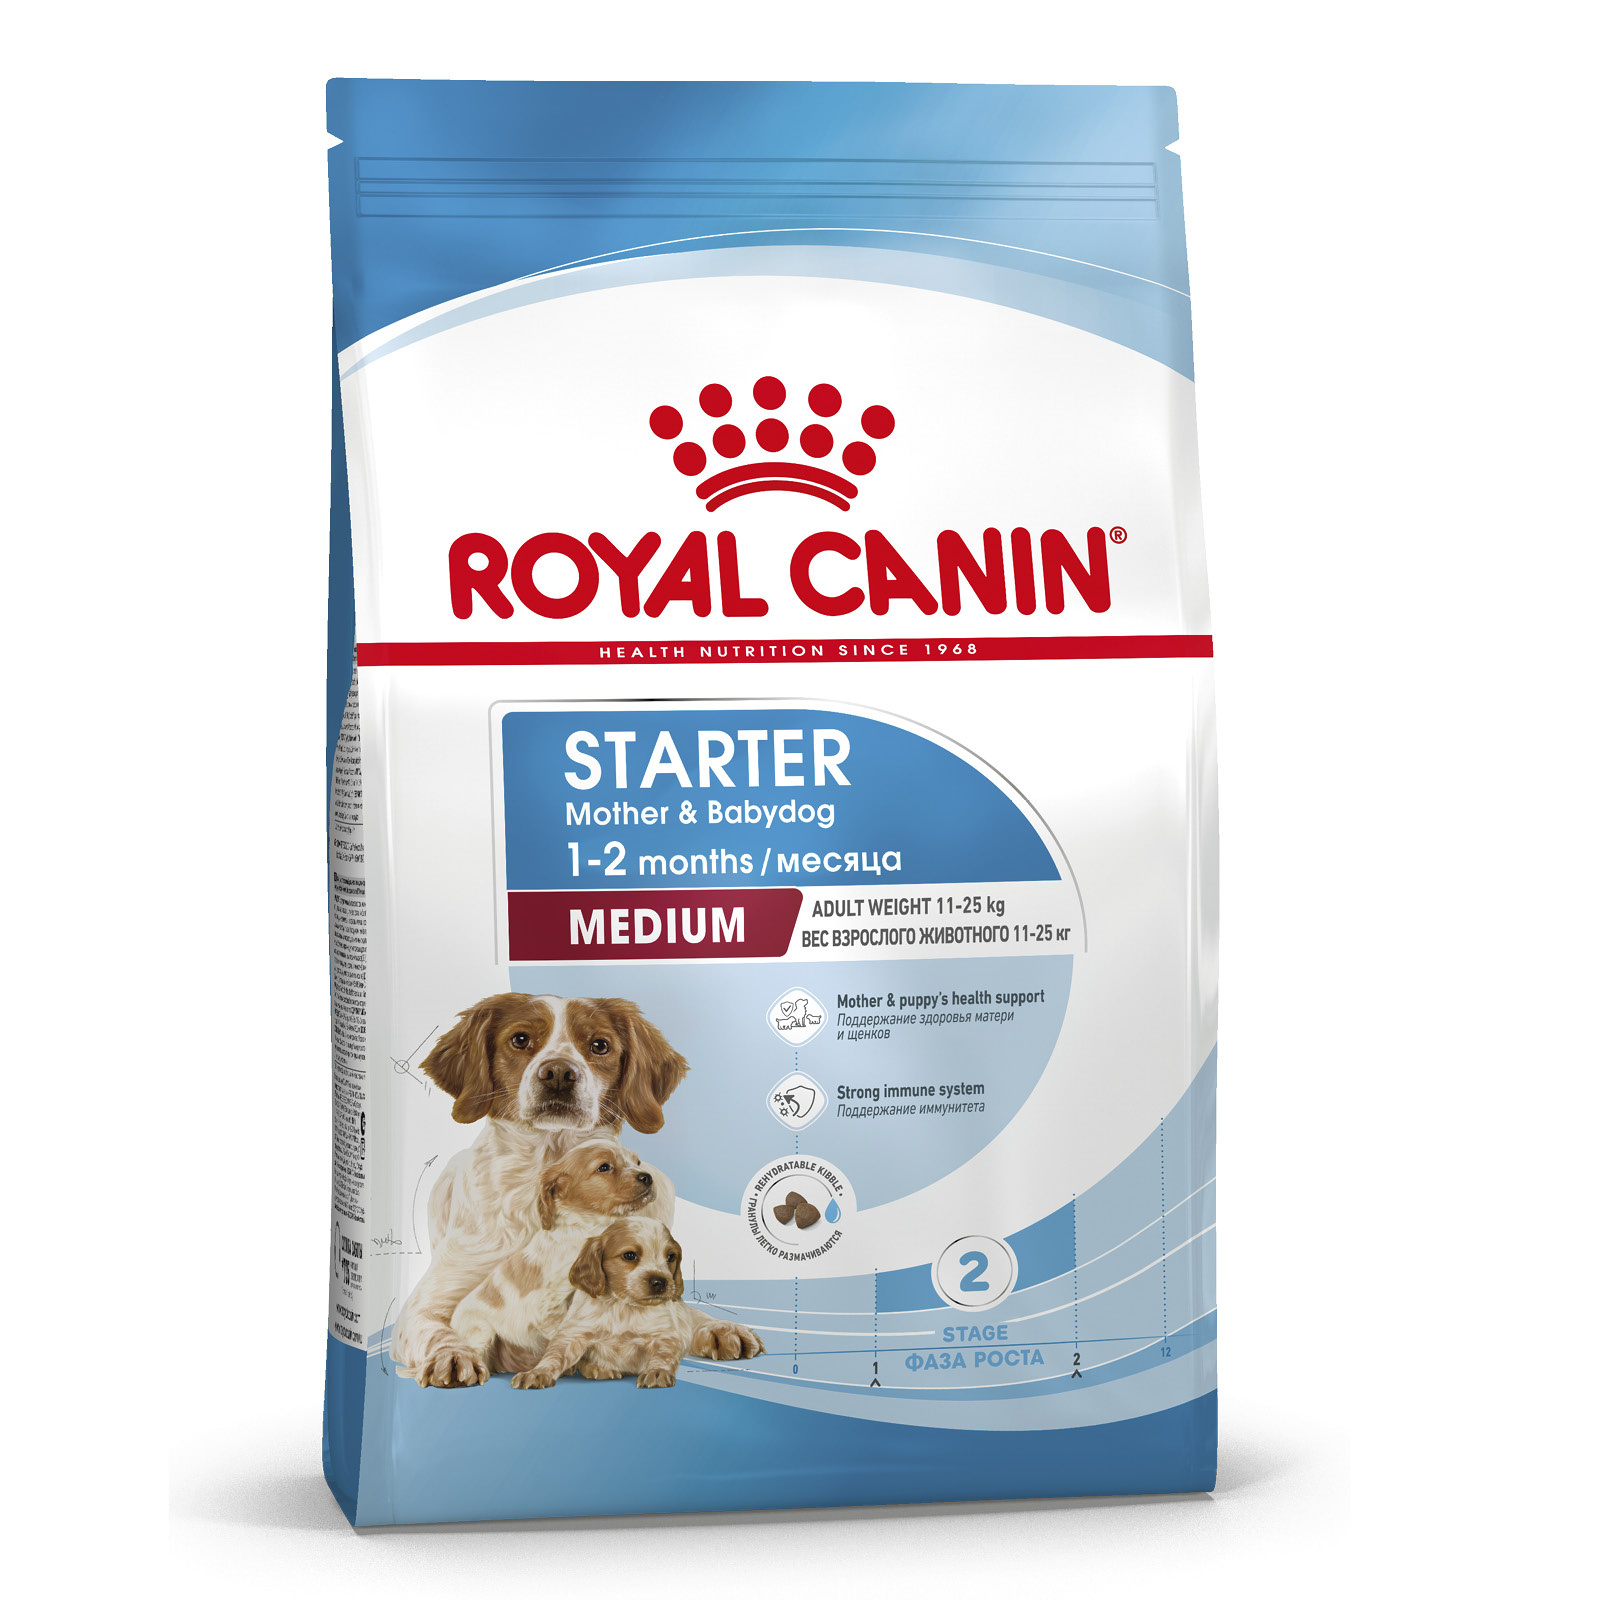 Royal Canin Корм Royal Canin для щенков средних пород от 3 недель до 2 месяцев, беременных и кормящих сук (4 кг) royal canin корм royal canin для щенков средних пород от 3 недель до 2 месяцев беременных и кормящих сук 4 кг